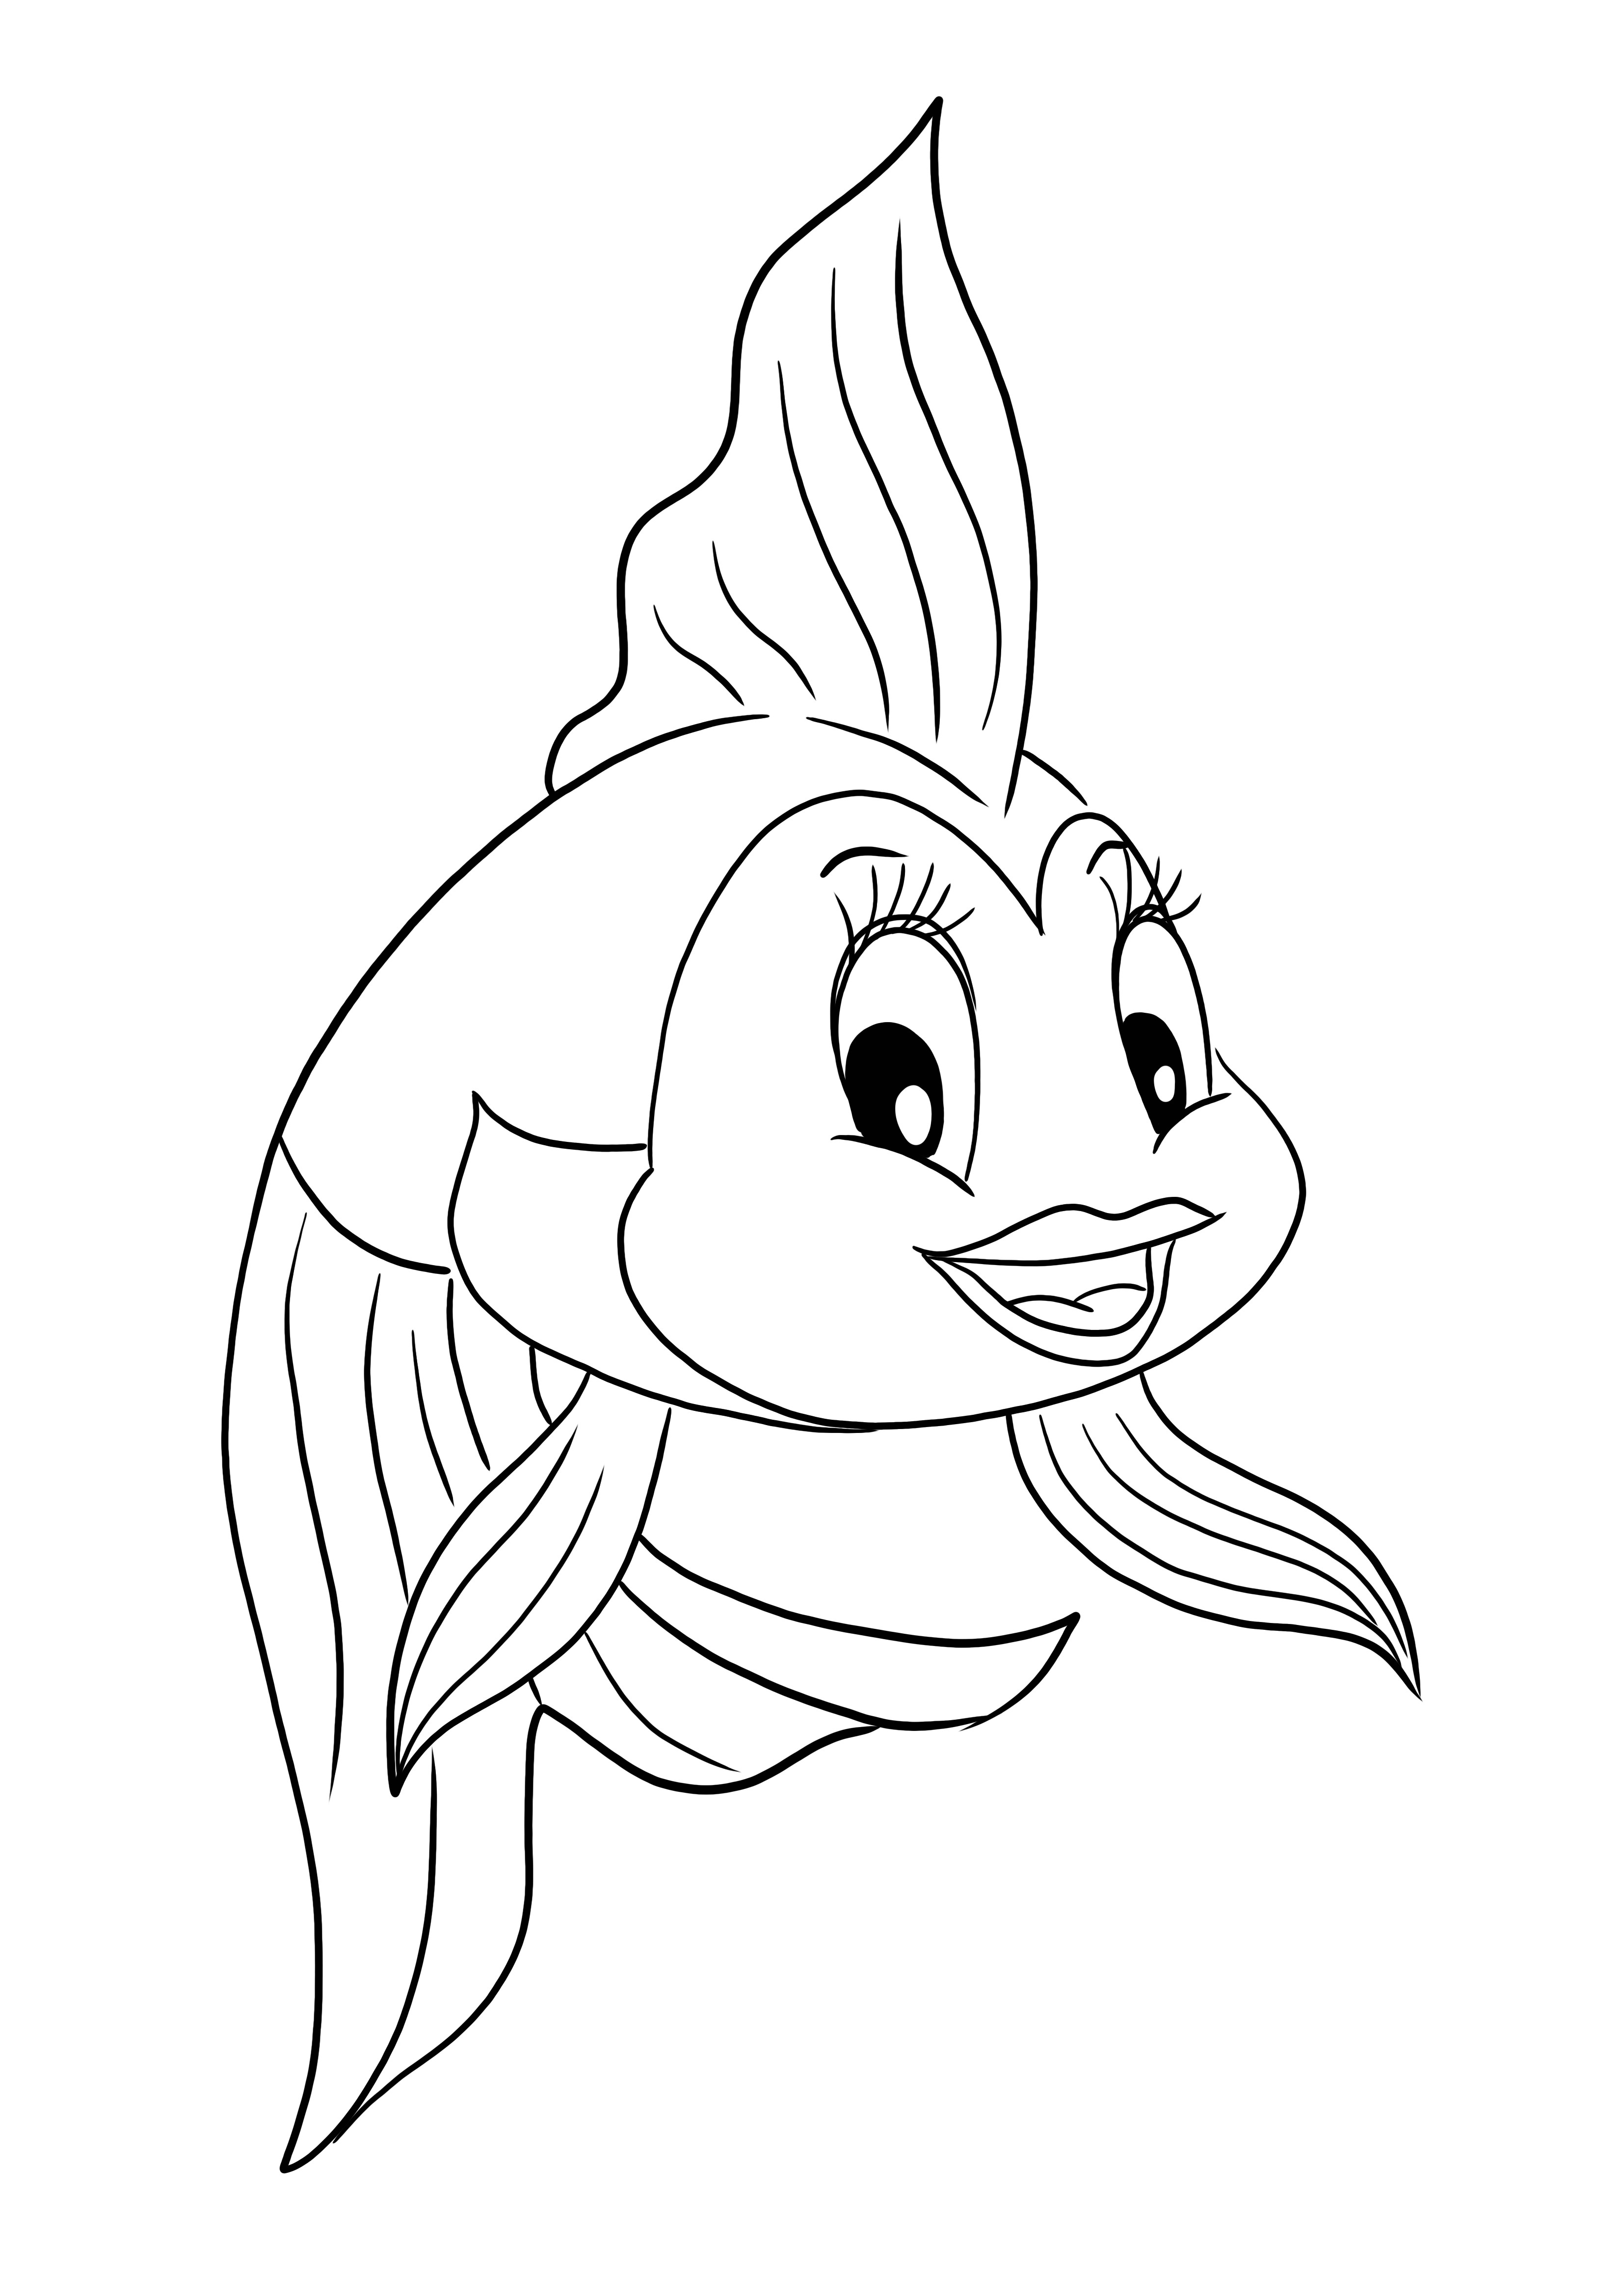 Una página para colorear e imprimir gratis de Cleo el pez de dibujos animados de Pinocho para niños